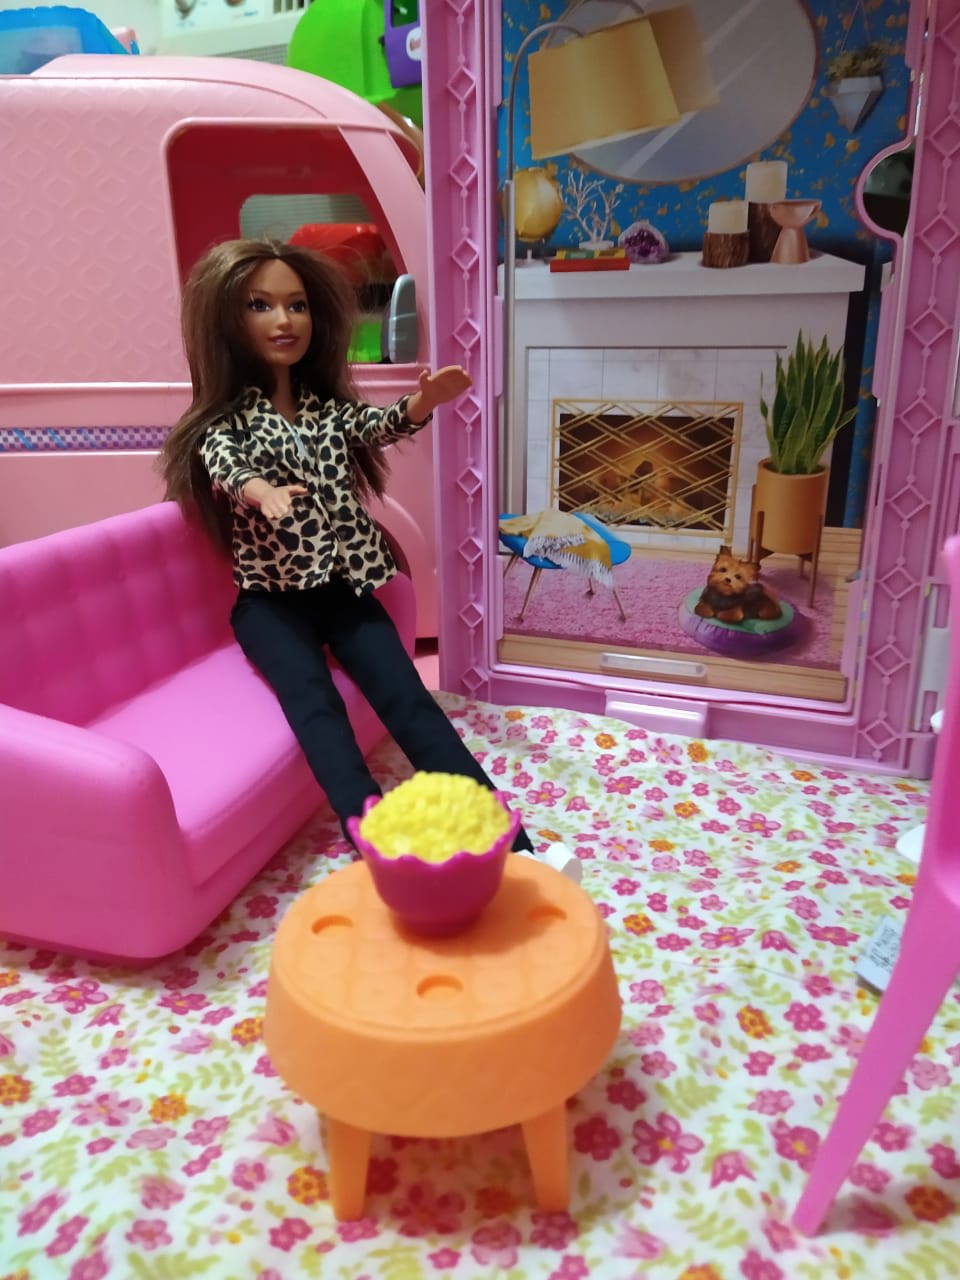 Roupas Personalizadas de Bonecas Barbie - Personalizados - Atelier Criativo  Valleria Dias - Artesão